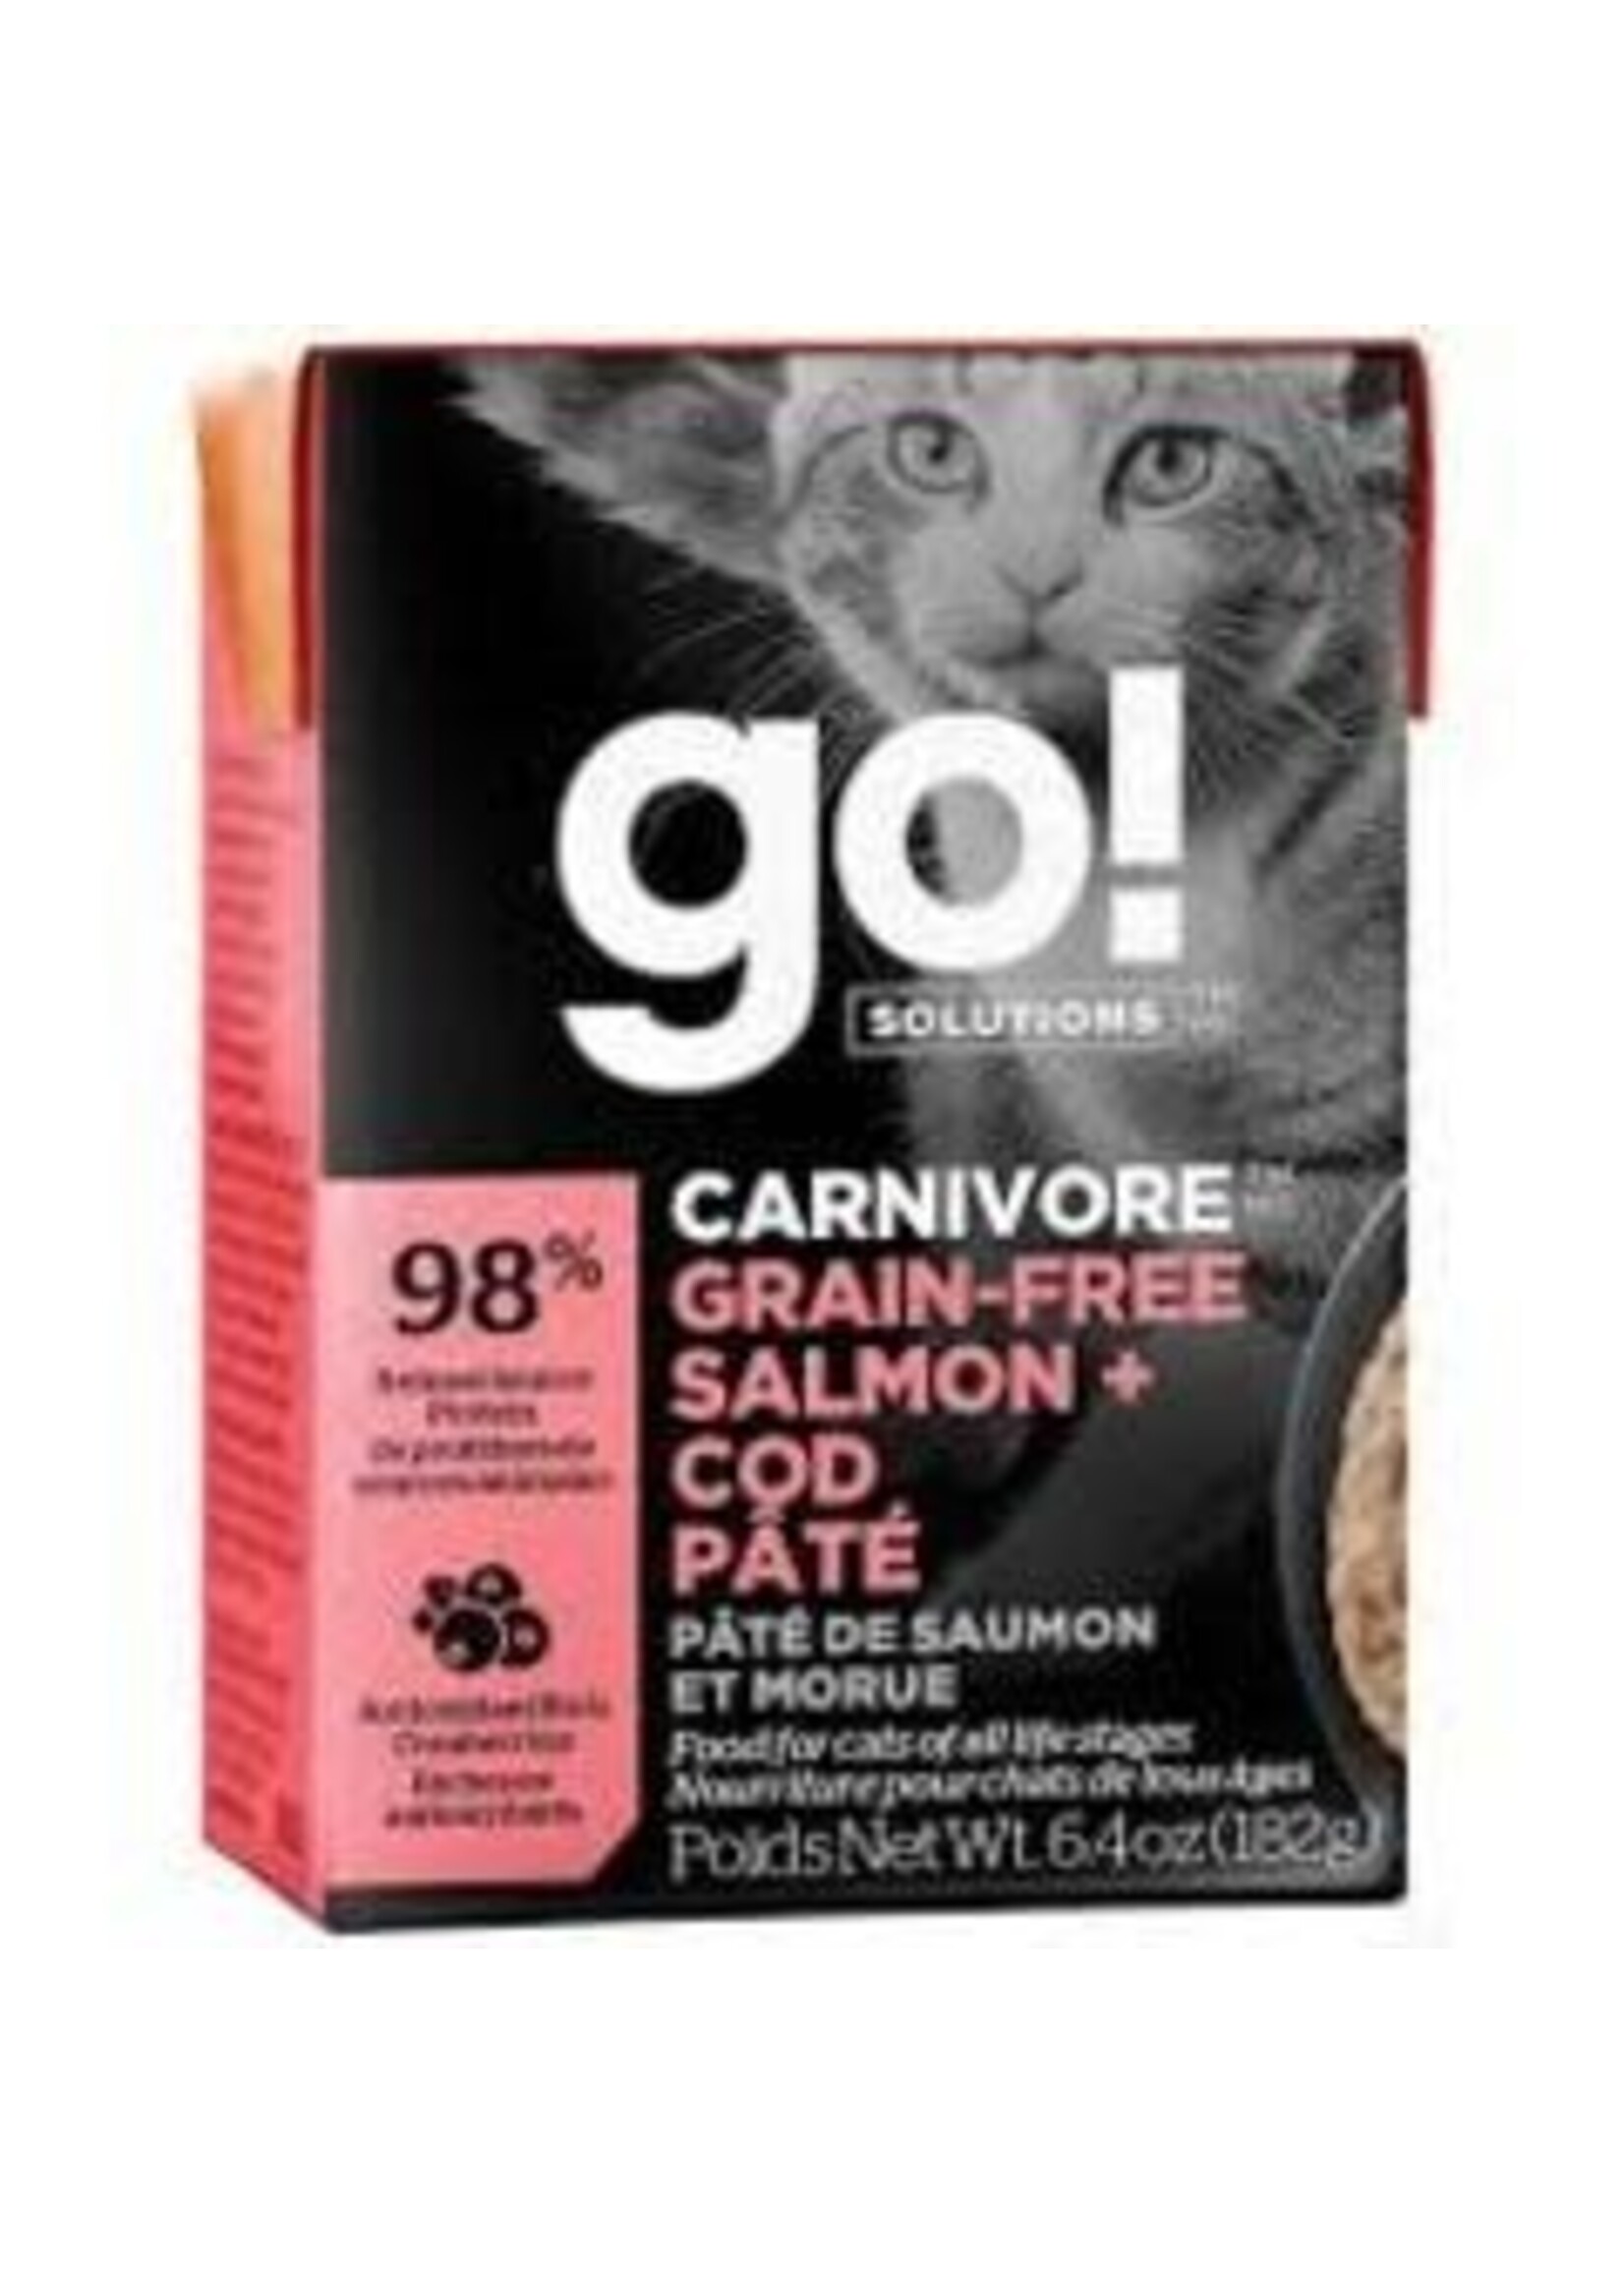 GO! Go! - Carnivore Salmon & Cod Pate Cat 6.4oz